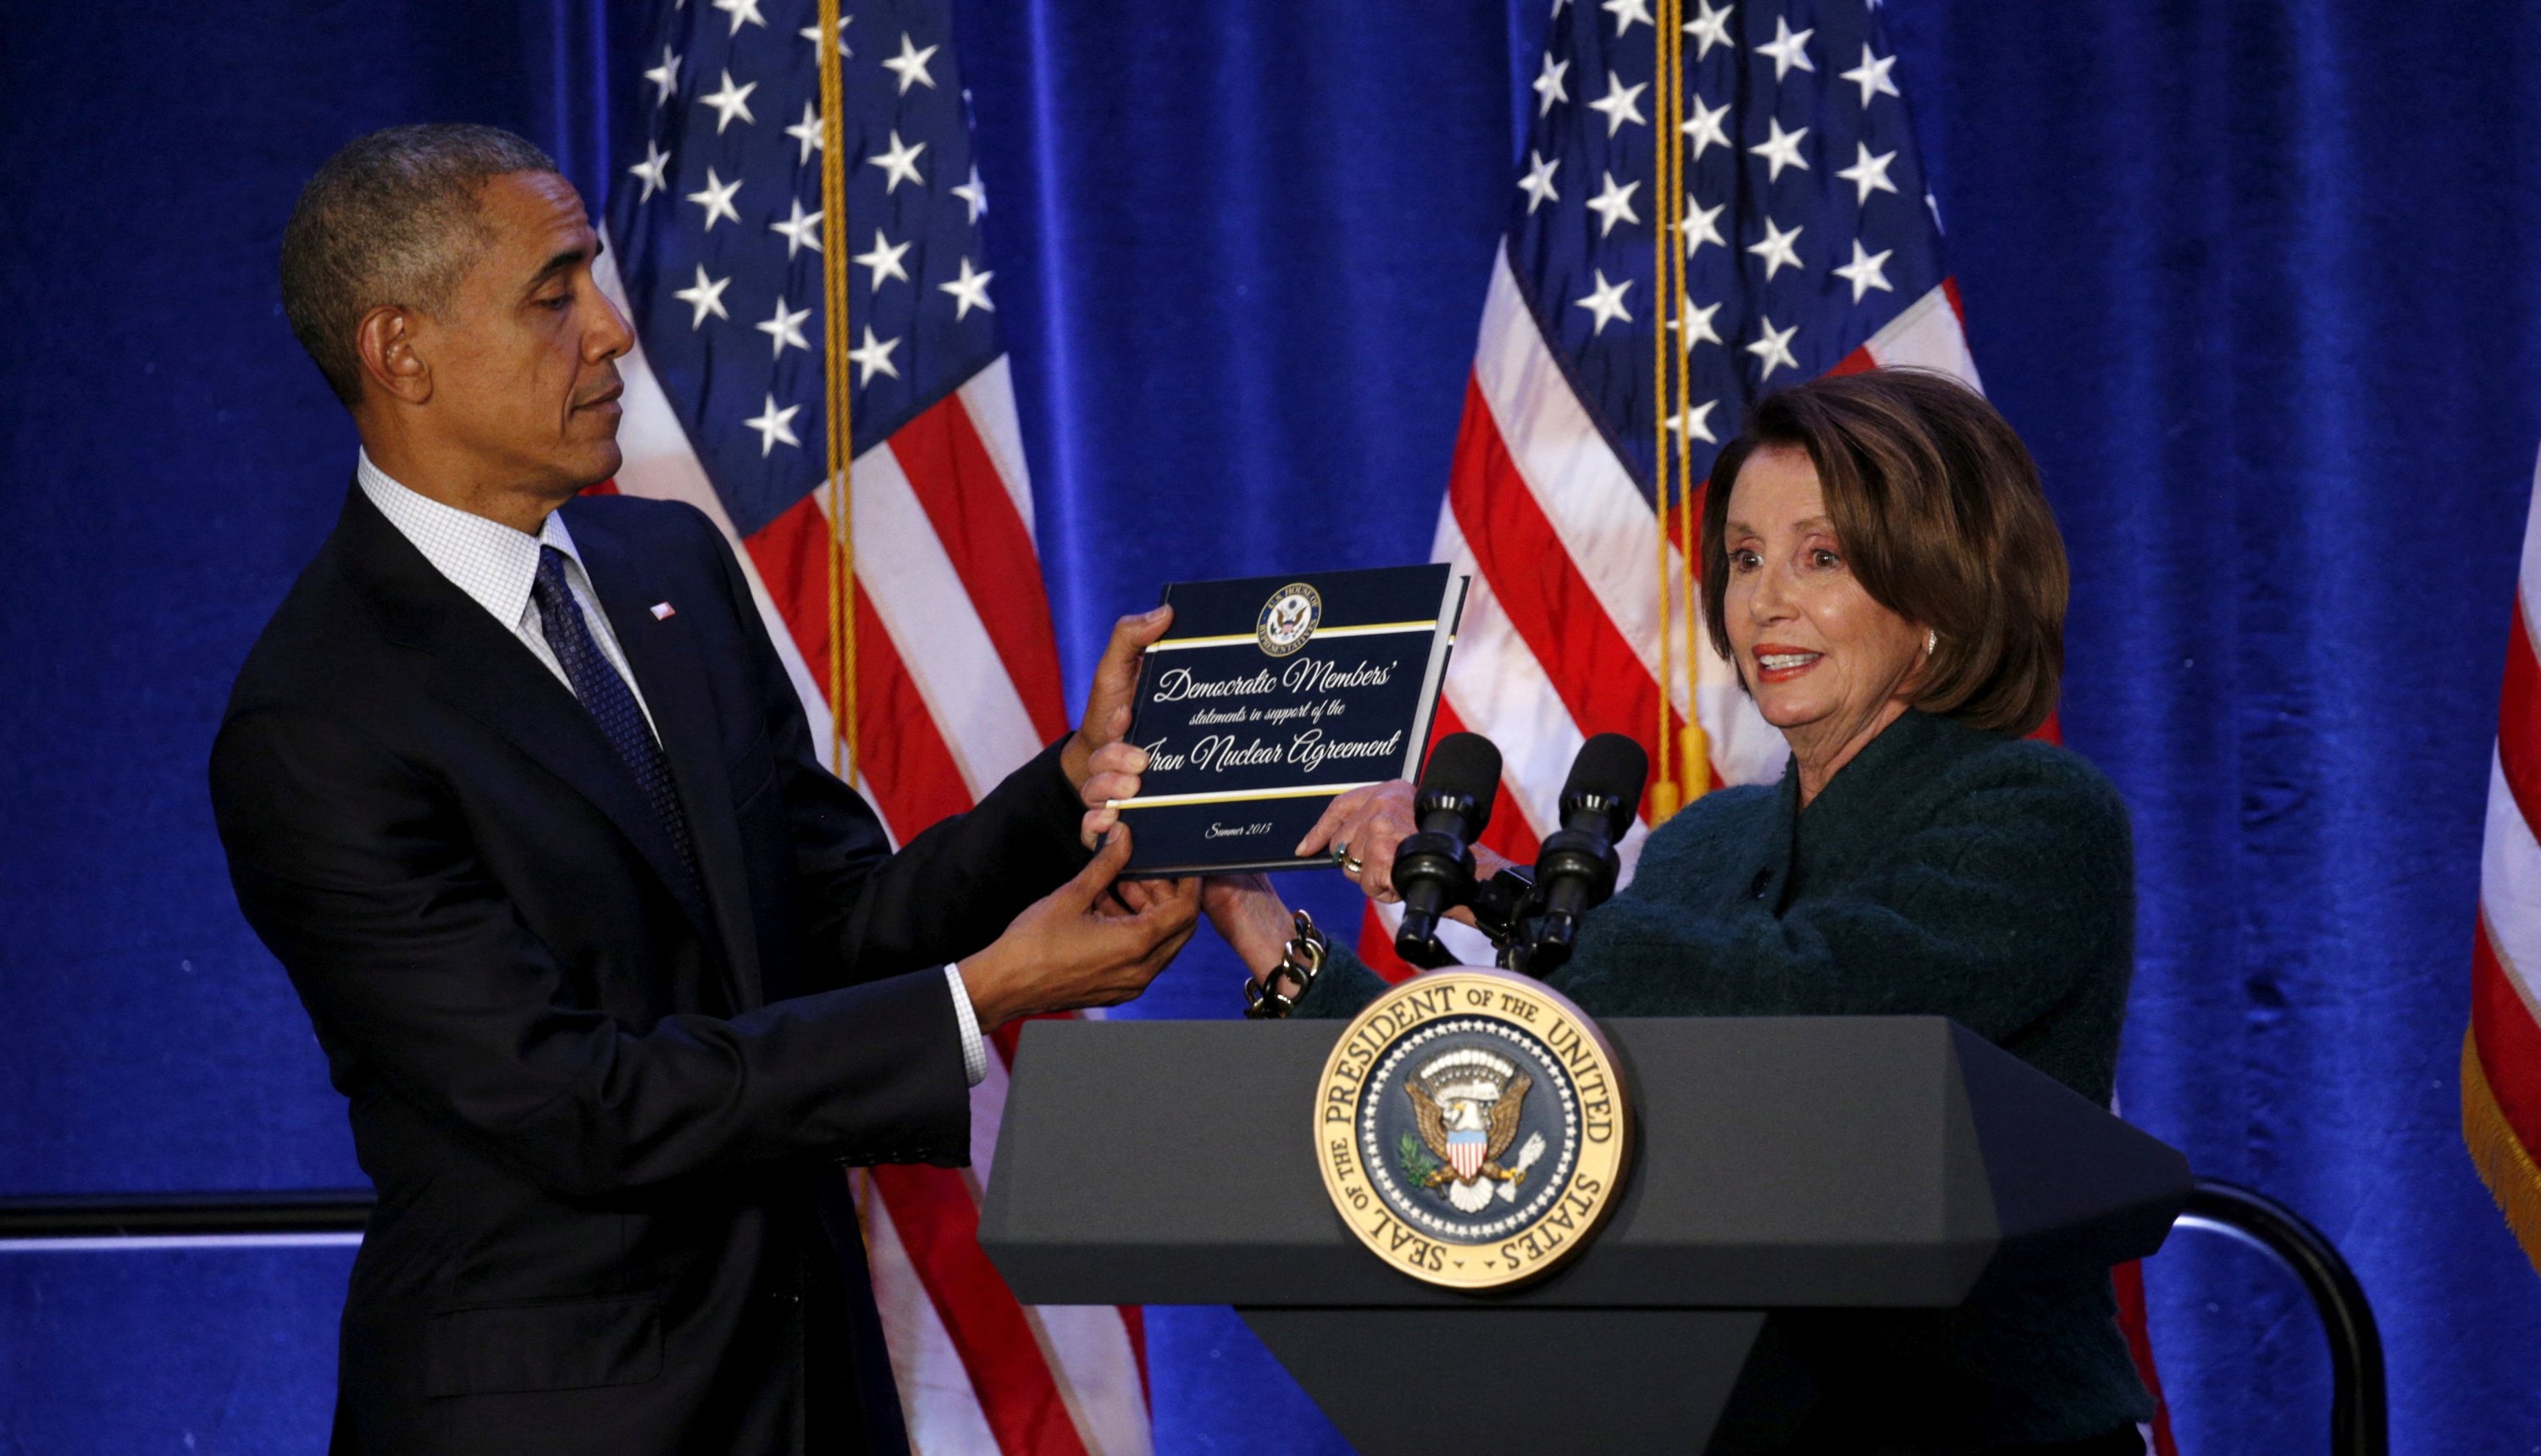 Temsilciler Meclisi Demokrat lideri Nancy Pelosi, ABD Başkanı Barack Obama'ya, Demokrat üyelerin İran nükleer anlaşmasına ilişkin destek beyanlarını içeren bir kitabı, 1 Ocak'ta Baltimore, Maryland, ABD'de düzenlenen Temsilciler Meclisi Demokratik Sorunlar Konferansı'nda sunar. 28, 2016. (Reuters Dosya Fotoğrafı)